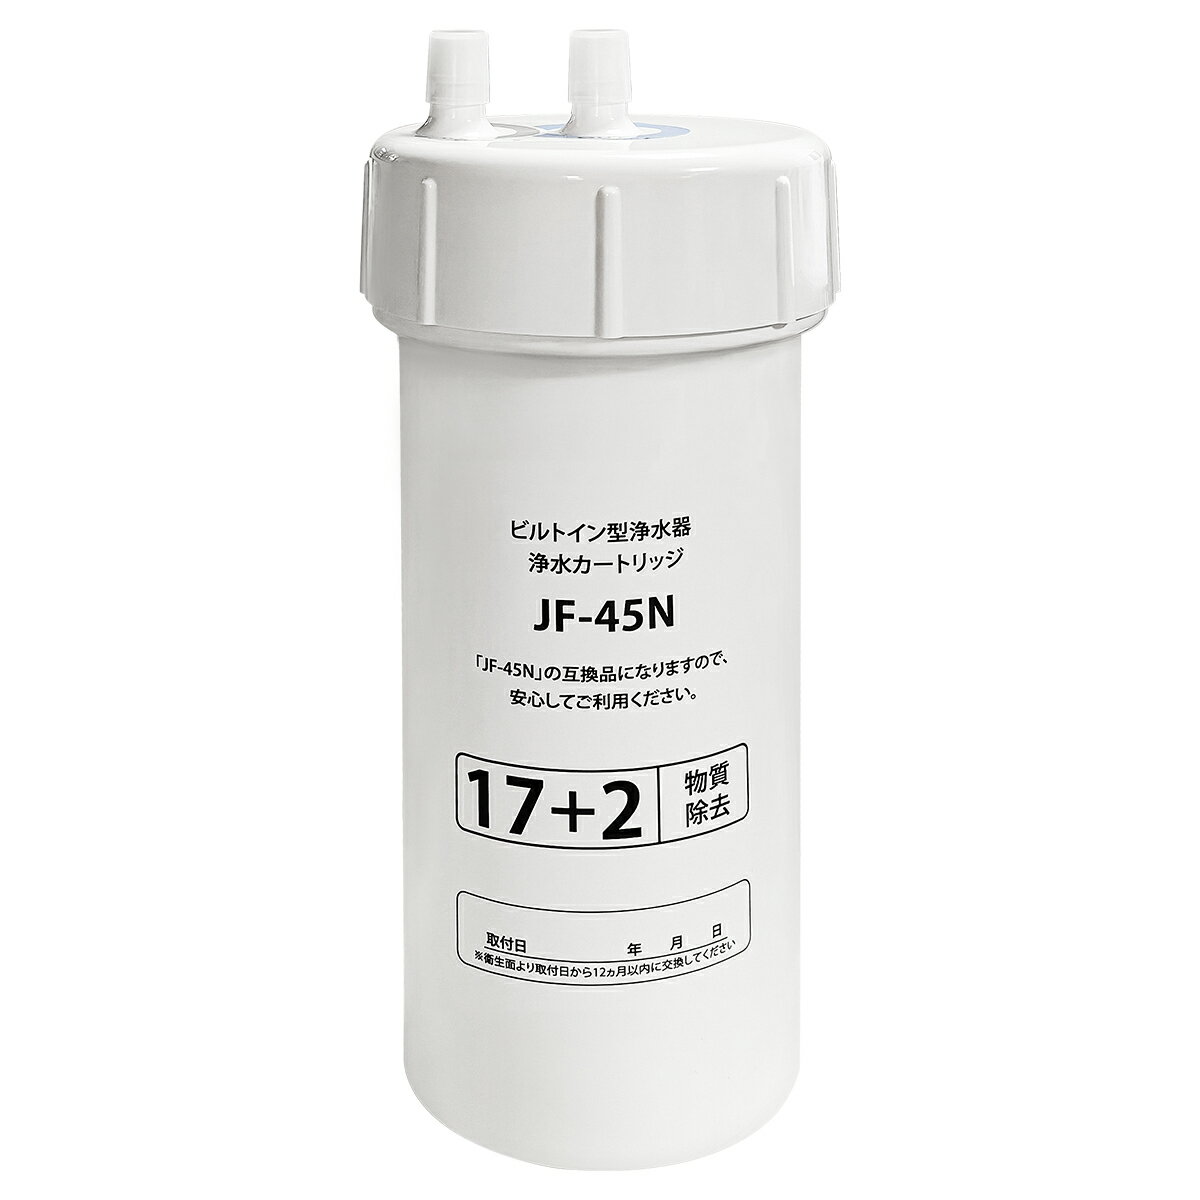 商品の説明 対応型番：JF-45N（本製品はLIXILのタッチレス水栓にご使用いただける互換品です。同性能ですので共通してお使い頂けます。） 17+2物質除去、交換時期の目安：1日に25Lご使用の場合、約12ヵ月/個。(交換目安は、水質、使用水量、水圧などにより異なりますが、衛生面より取付日から12ヵ月以内に交換してください。) 浄水カートリッジ 対応機種： KS-403XU(JW) KS-406X(JW) KS-460SXU(JW) KS-462SXU(JW) JF-N460SX(JW) JF-N461SX(JW) JF-N463SX(JW) JF-NA464SX(JW) JF-N465SX(JW) JF-N466SX(JW) JF-N467SX(JW) JF-NA461S(JW) JF-NA466S(JW) JF-NB461SX(JW) JF-NB466SX(JW) JF-NA466SU(JW) JF-NA411S(JW) JF-NA411S/SAB(JW) JF-NB466SXU(JW) JF-WA501(JW) ※ご購入の前にご希望商品の対応機種一覧より、適合商品である事をご確認願います。 ※購入検討商品に関してご不明な点やご不安をお持ちのお客様は、ご購入前にお問い合わせください。